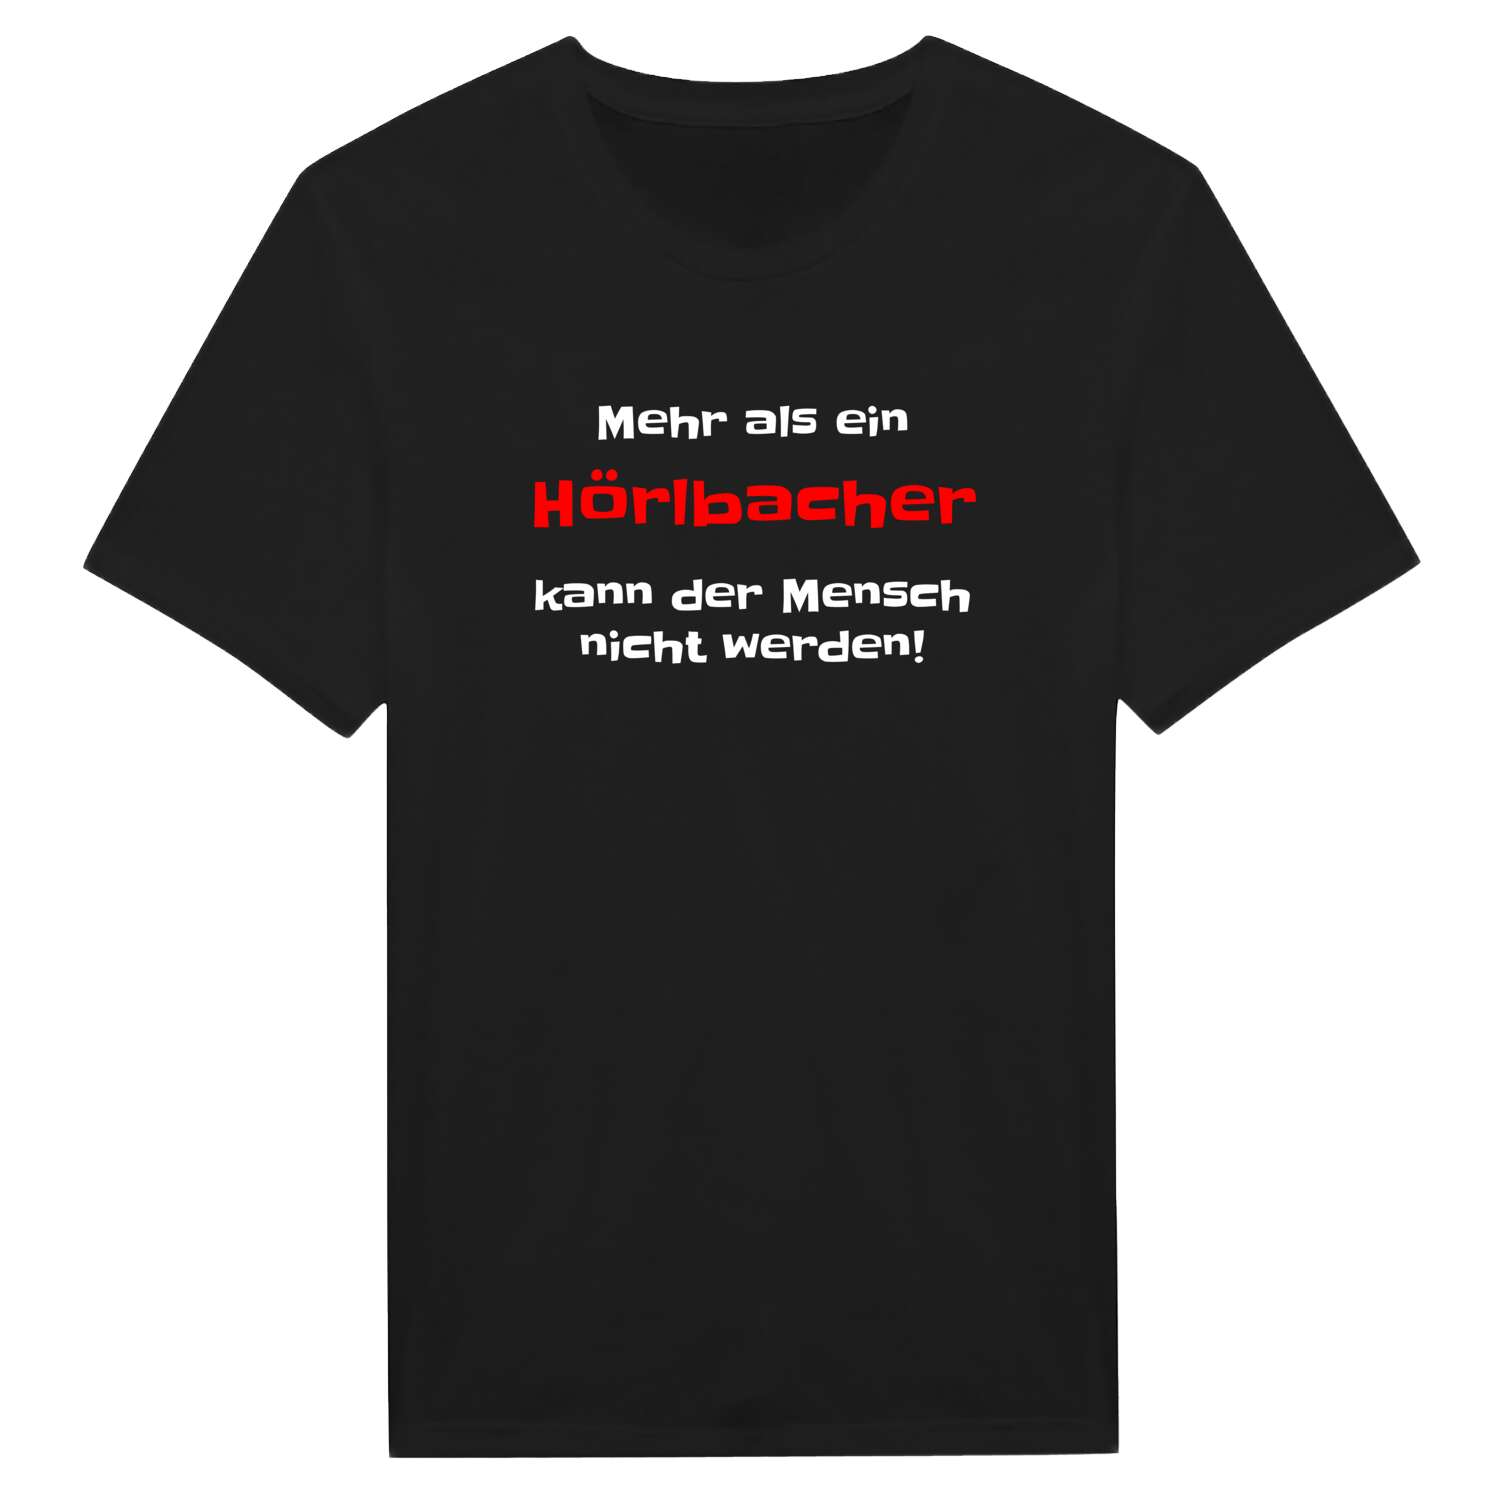 Hörlbach T-Shirt »Mehr als ein«